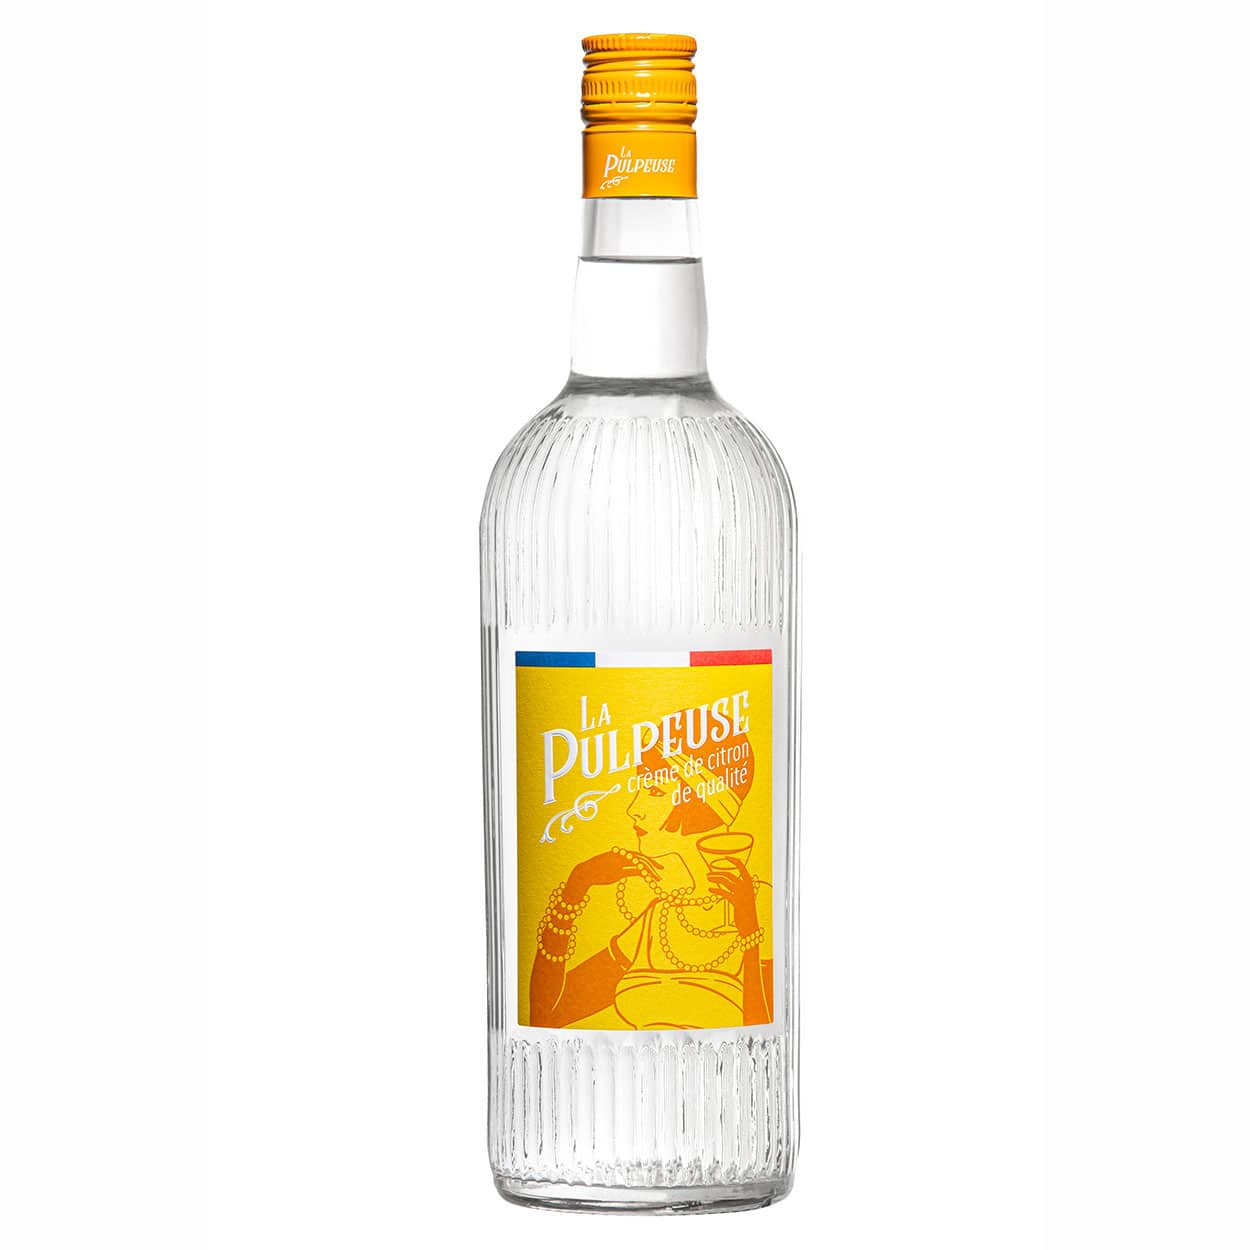 Mignonnettes (mini -bouteilles) de Vodka: l'eau de vie à l'état pur!